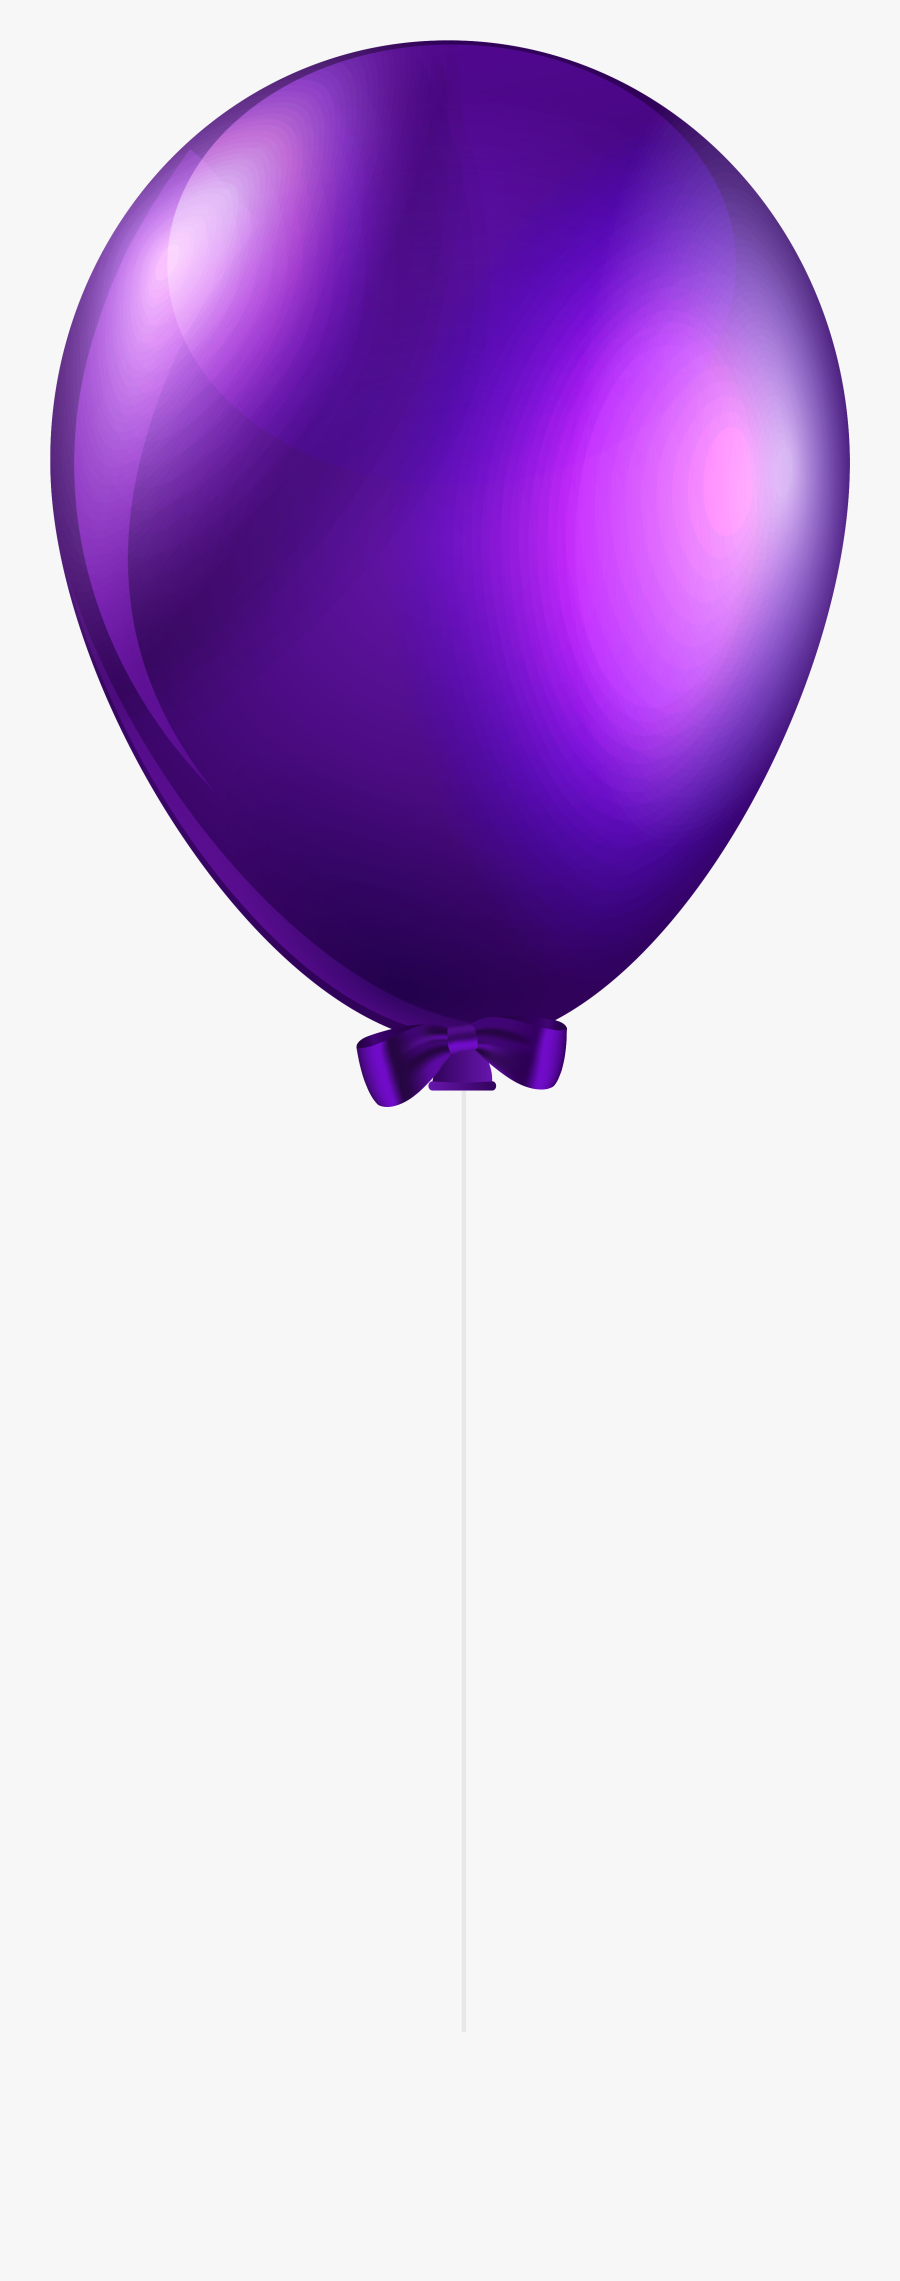 Purple Balloon Transparent Png Clip Art Image - Purple Balloon Transparent Background, Transparent Clipart